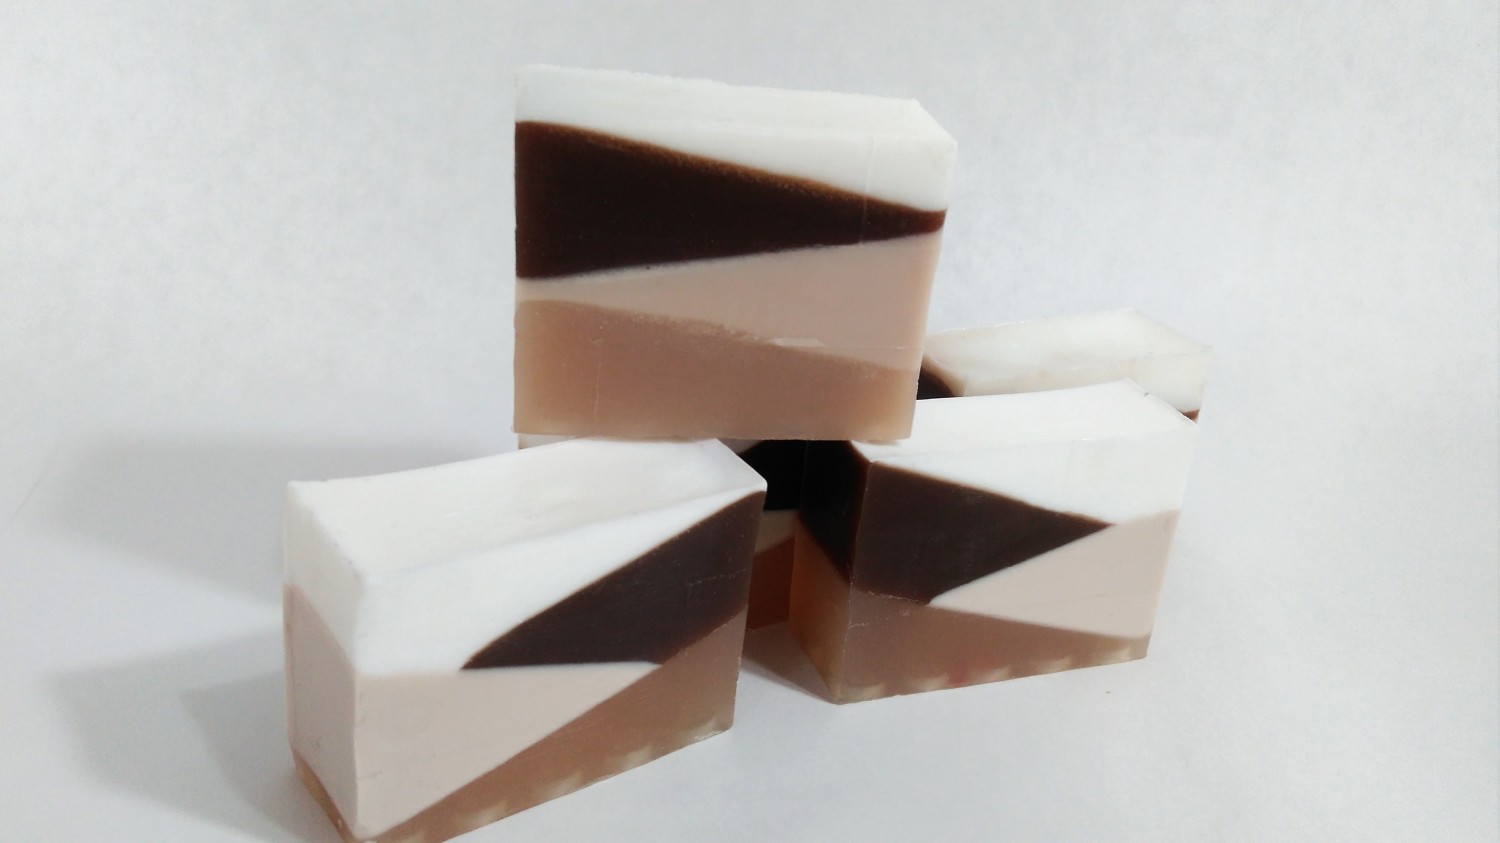 Karamelvoé mydlo v troch kúskoch v odtieňoch hnedej farby stojí uložené na sebe na bieom pozadí.